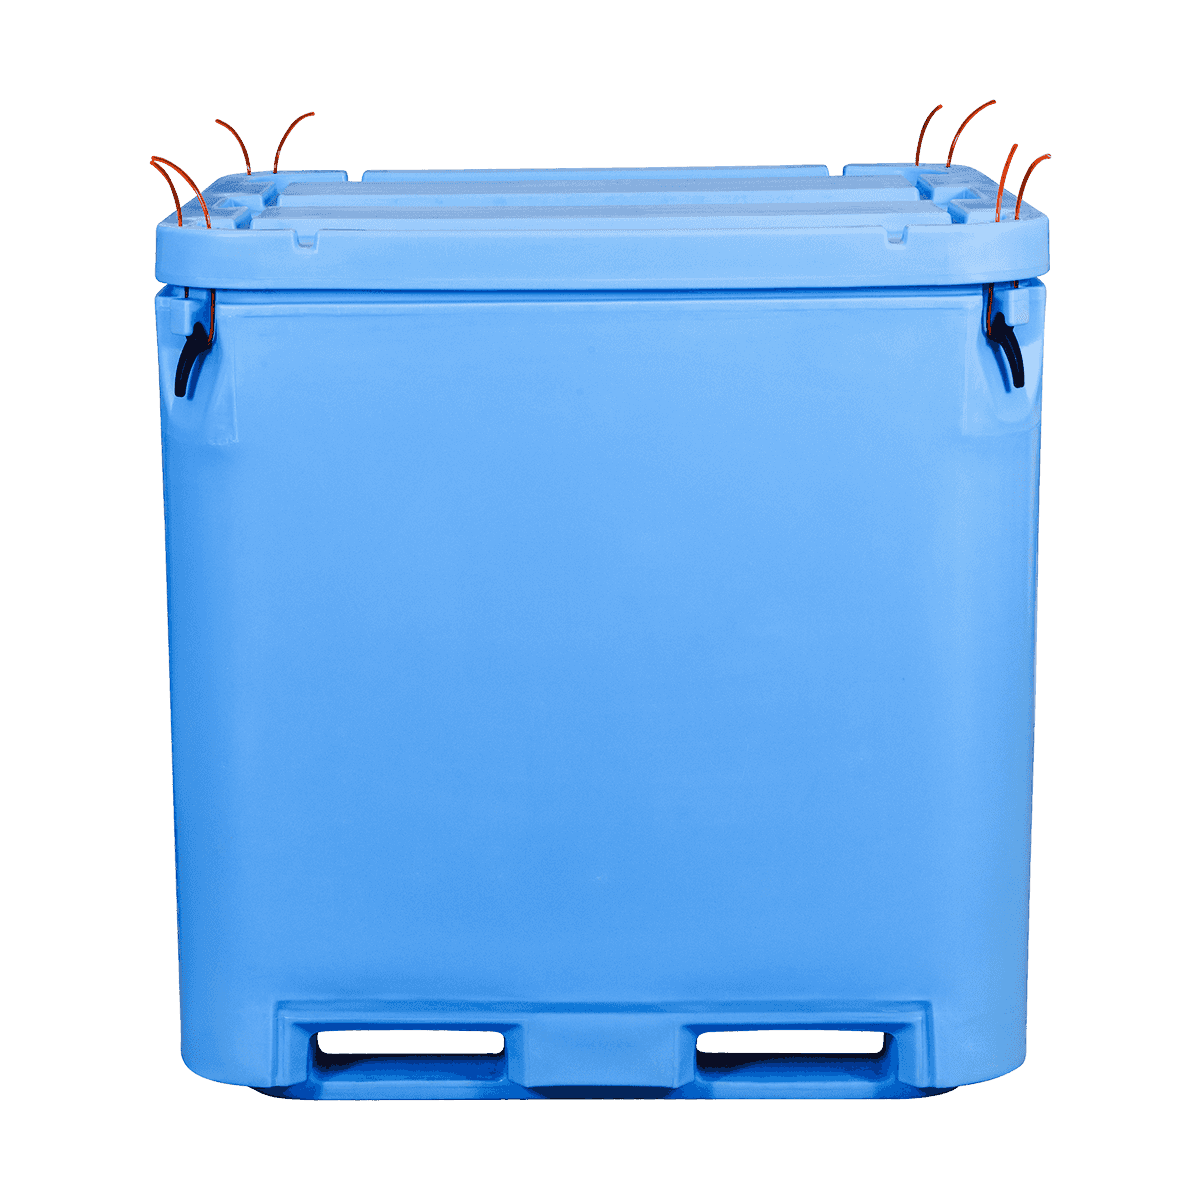 AF-1000L bin de pescado aislados bin de plástico para uso industrial de mariscos